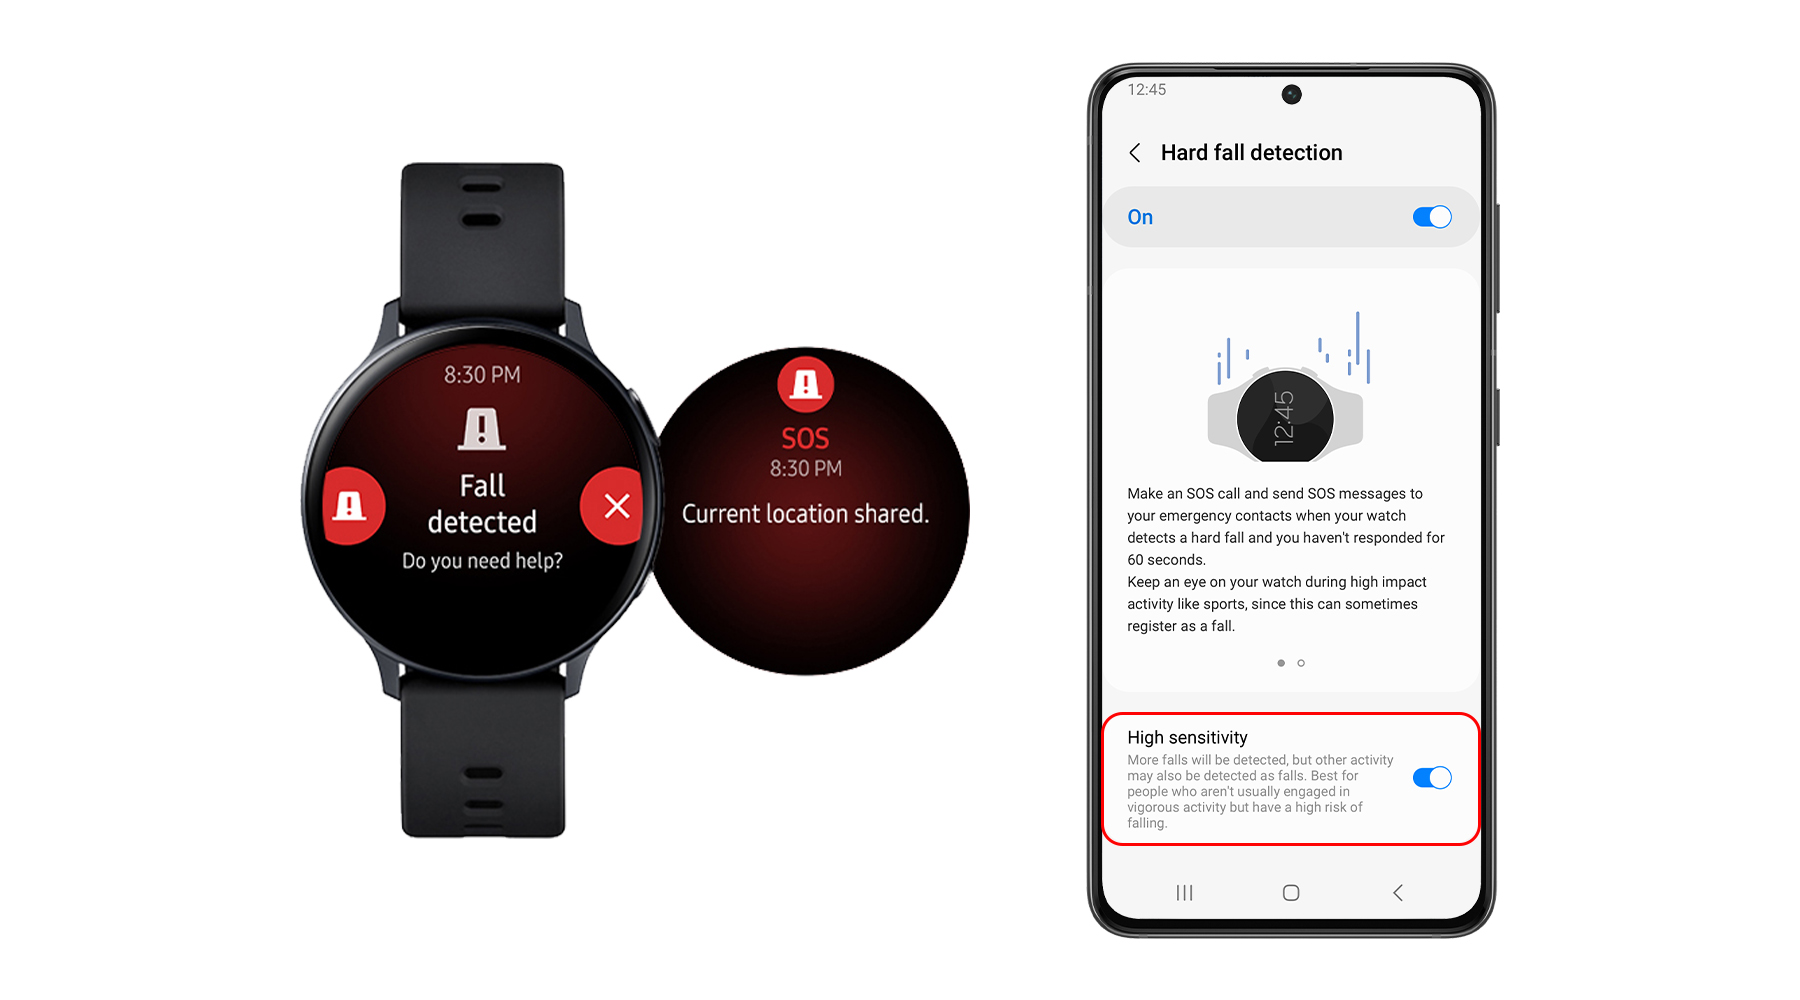 Samsung ajoute des fonctionnalités exclusives de la Galaxy Watch 4 aux anciennes smartwatches Galaxy Watch, Watch Active, Watch Active 2 et Watch 3